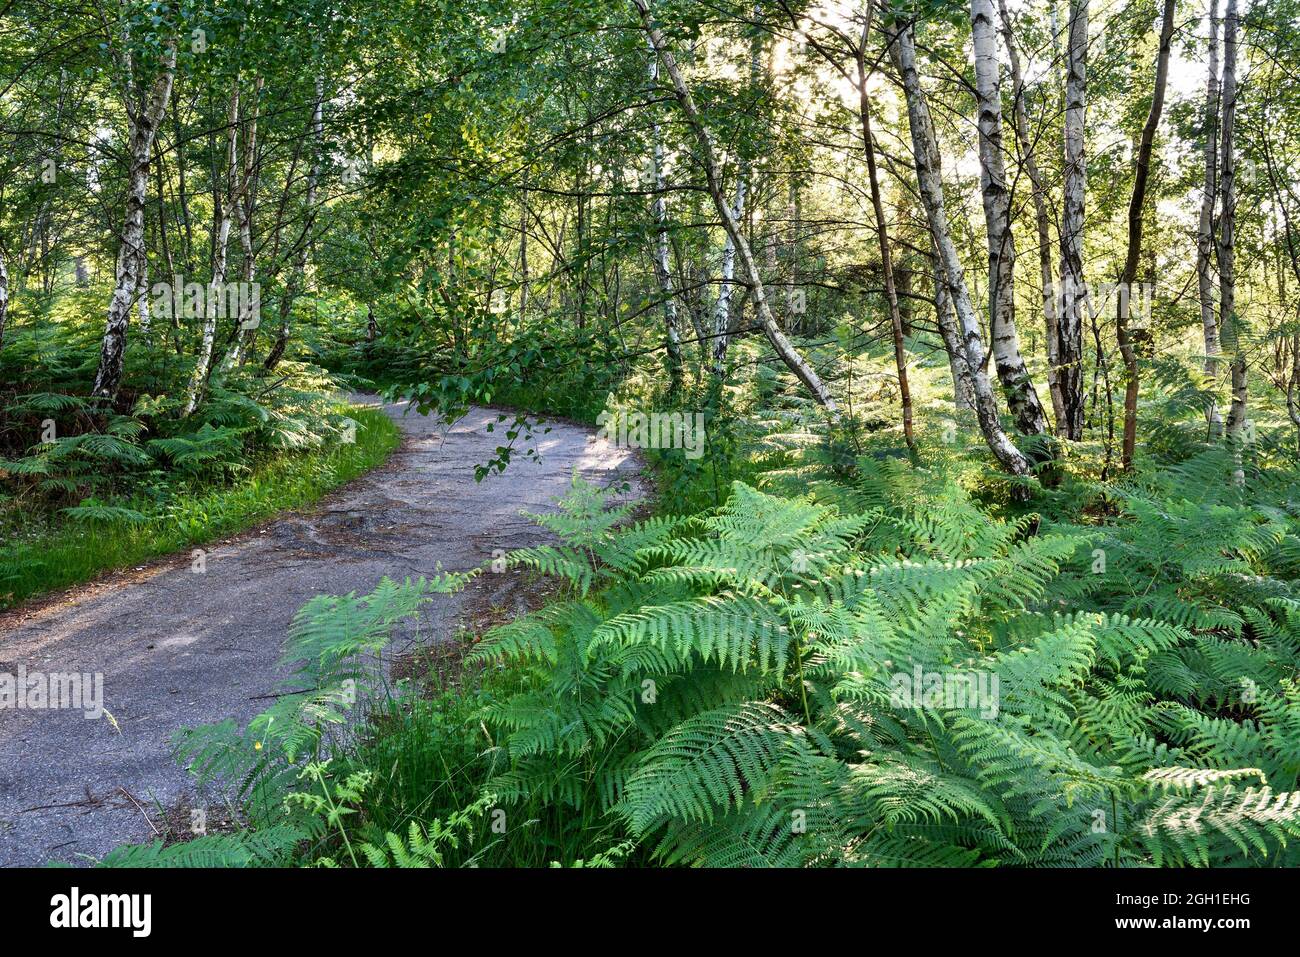 Piste cyclable au travers de parterres de fougeres en sous-bois de bouleaux, Foret de Rambouillet, Parc naturel regional de la Haute Vallee de Stock Photo